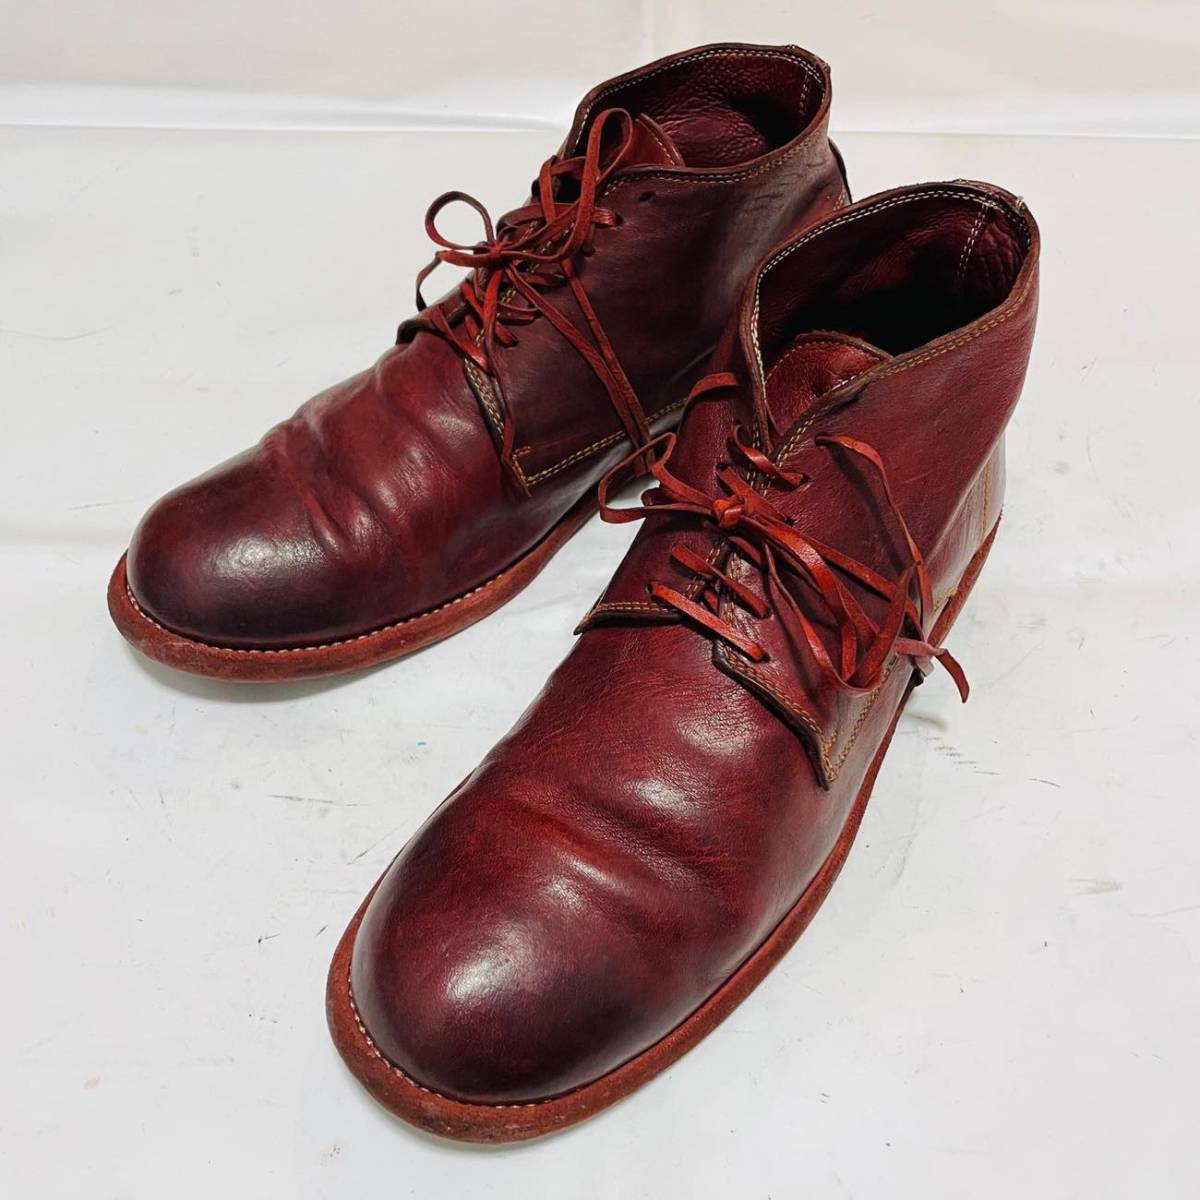 Guidi グイディ 994 ホースレザーアンクルブーツ 定価123,200円 41.5(約26.5cm) Ankle Boots レザーシューズ ダービーシューズ 革靴 赤 箱_画像5